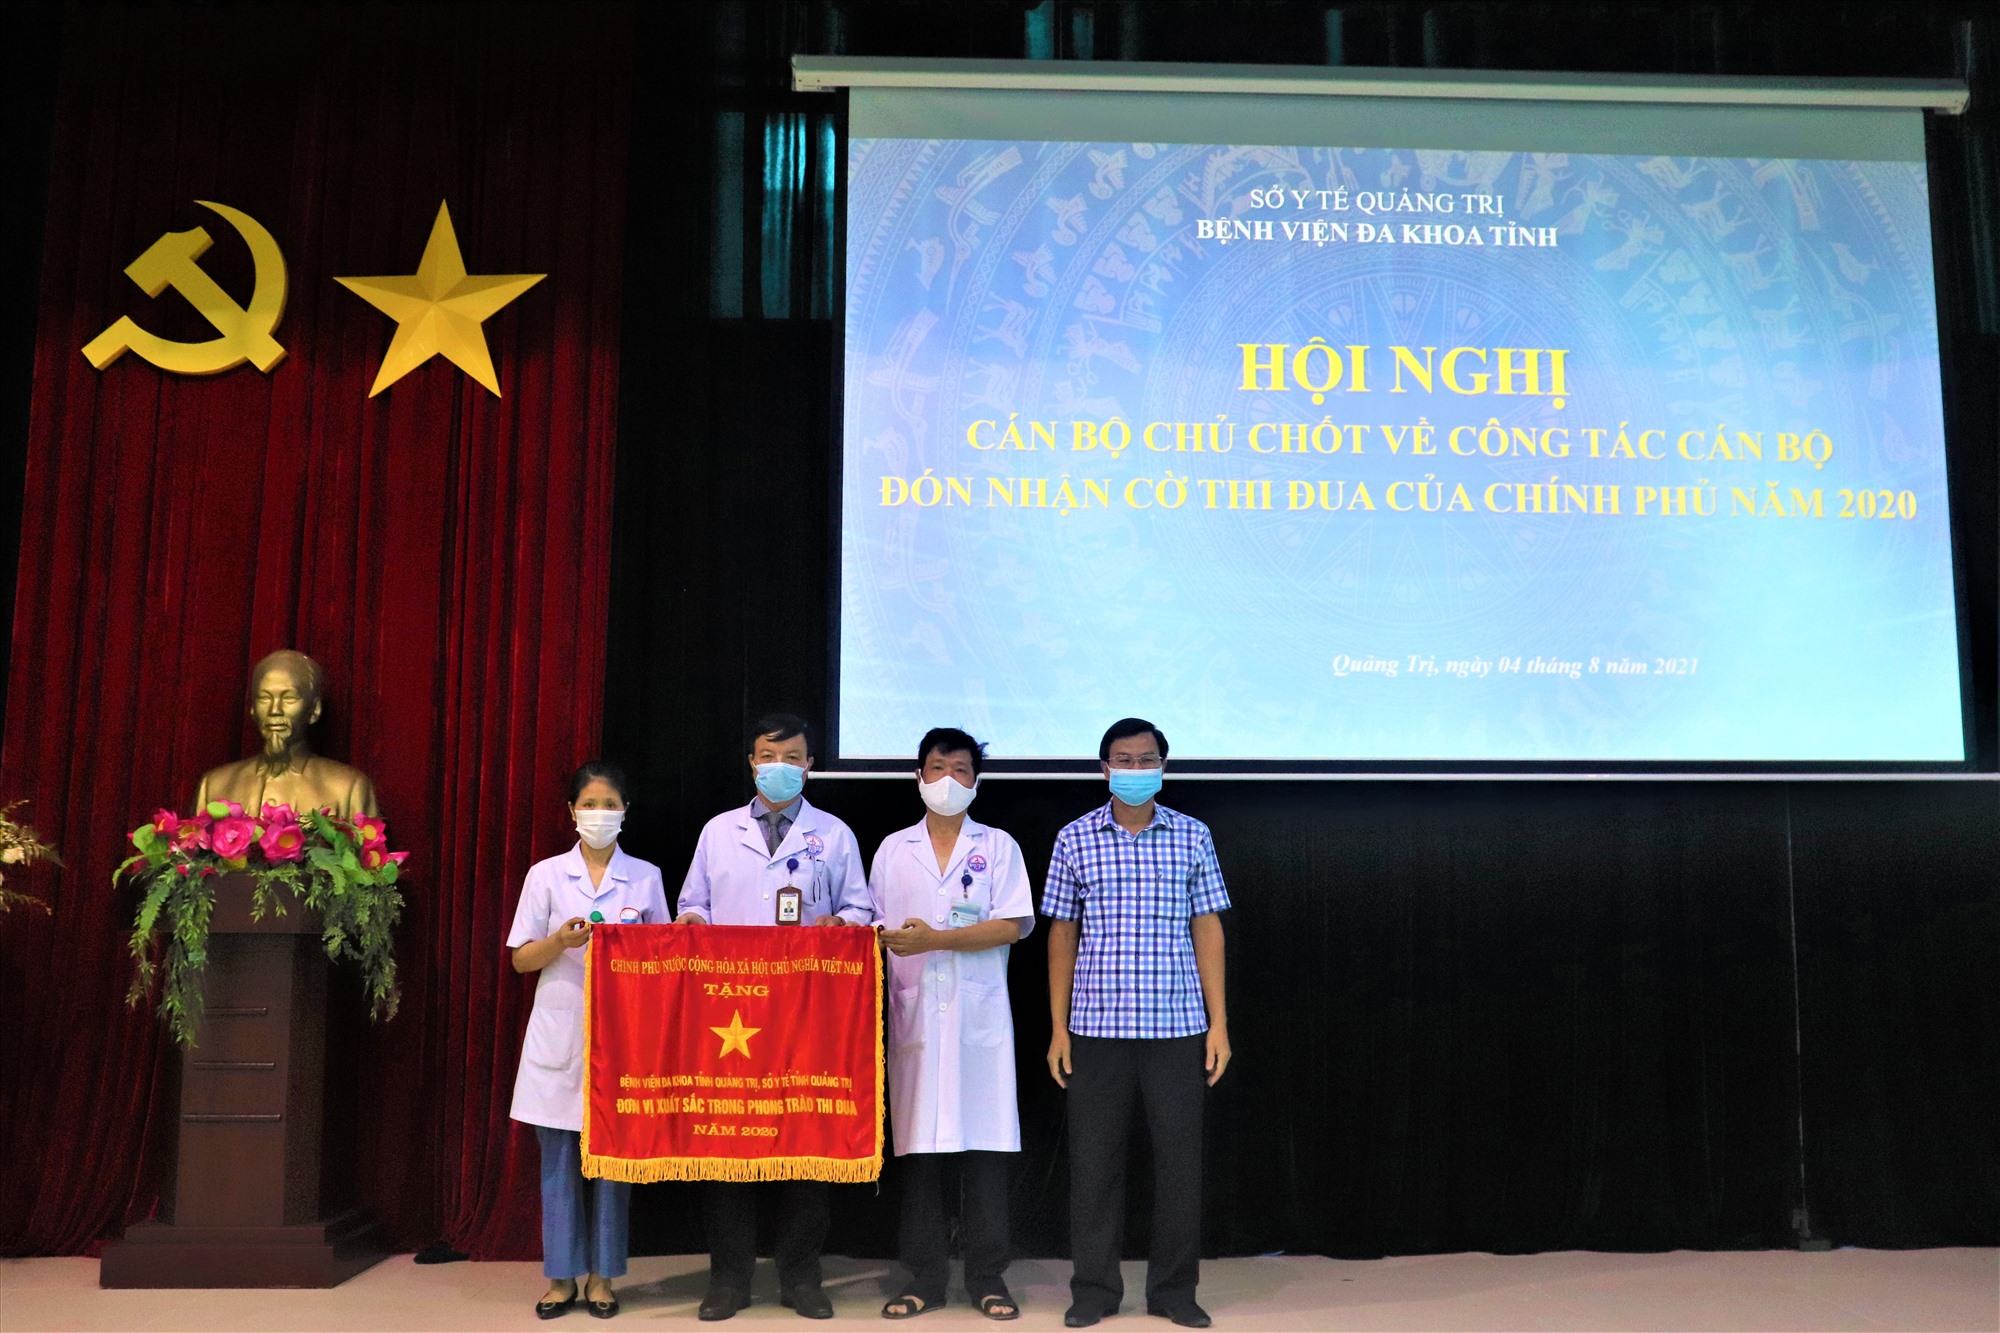 Ban lãnh đạo Bệnh viện Đa khoa tỉnh Quảng Trị nhận Cờ thi đua của Chính phủ - Ảnh: T.P